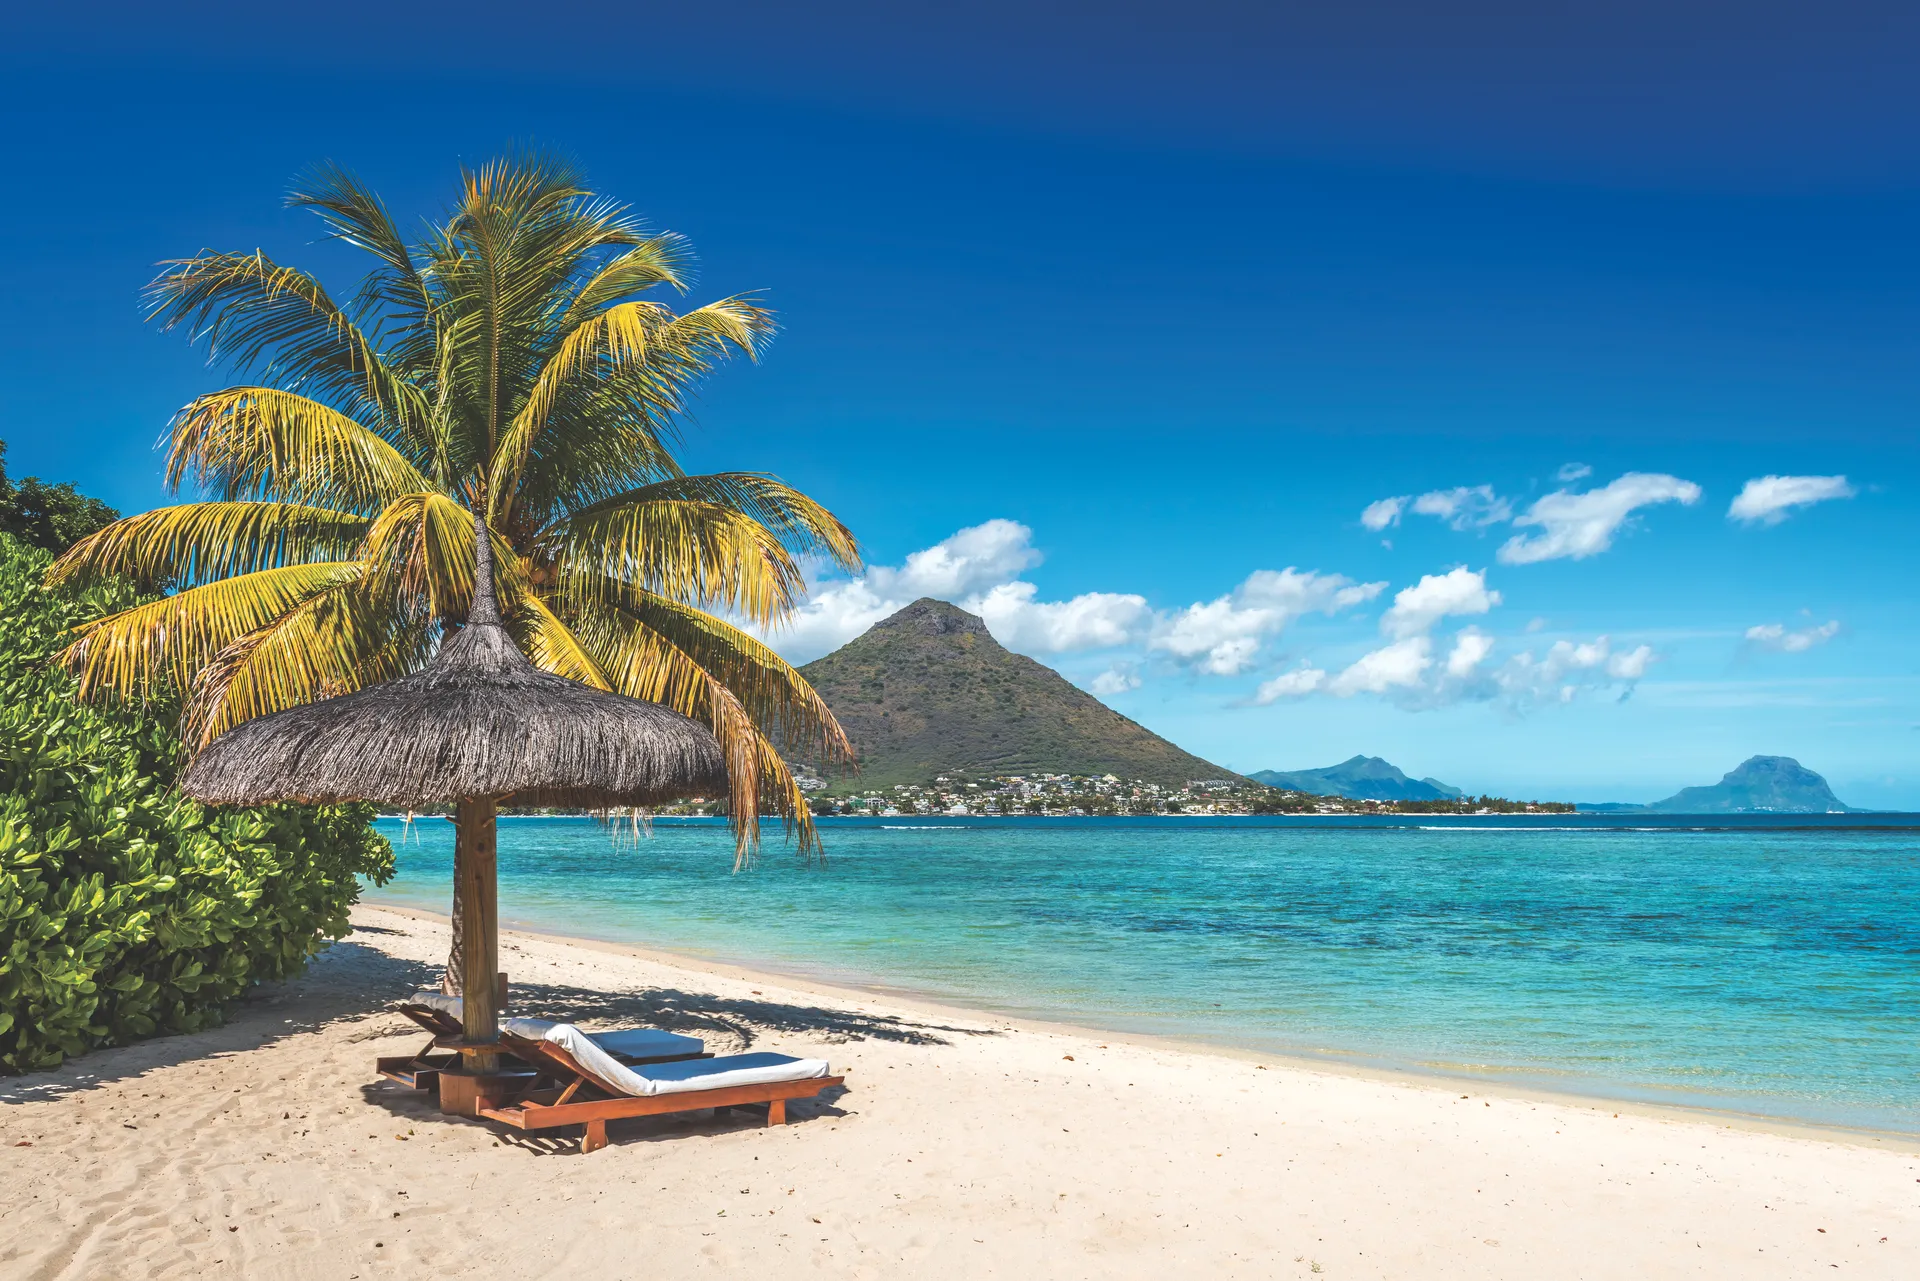 Plan je een reis naar Mauritius? Ruim aanbod hotels in Mauritius. Boek nu tegen scherpe prijzen met Neckermann.